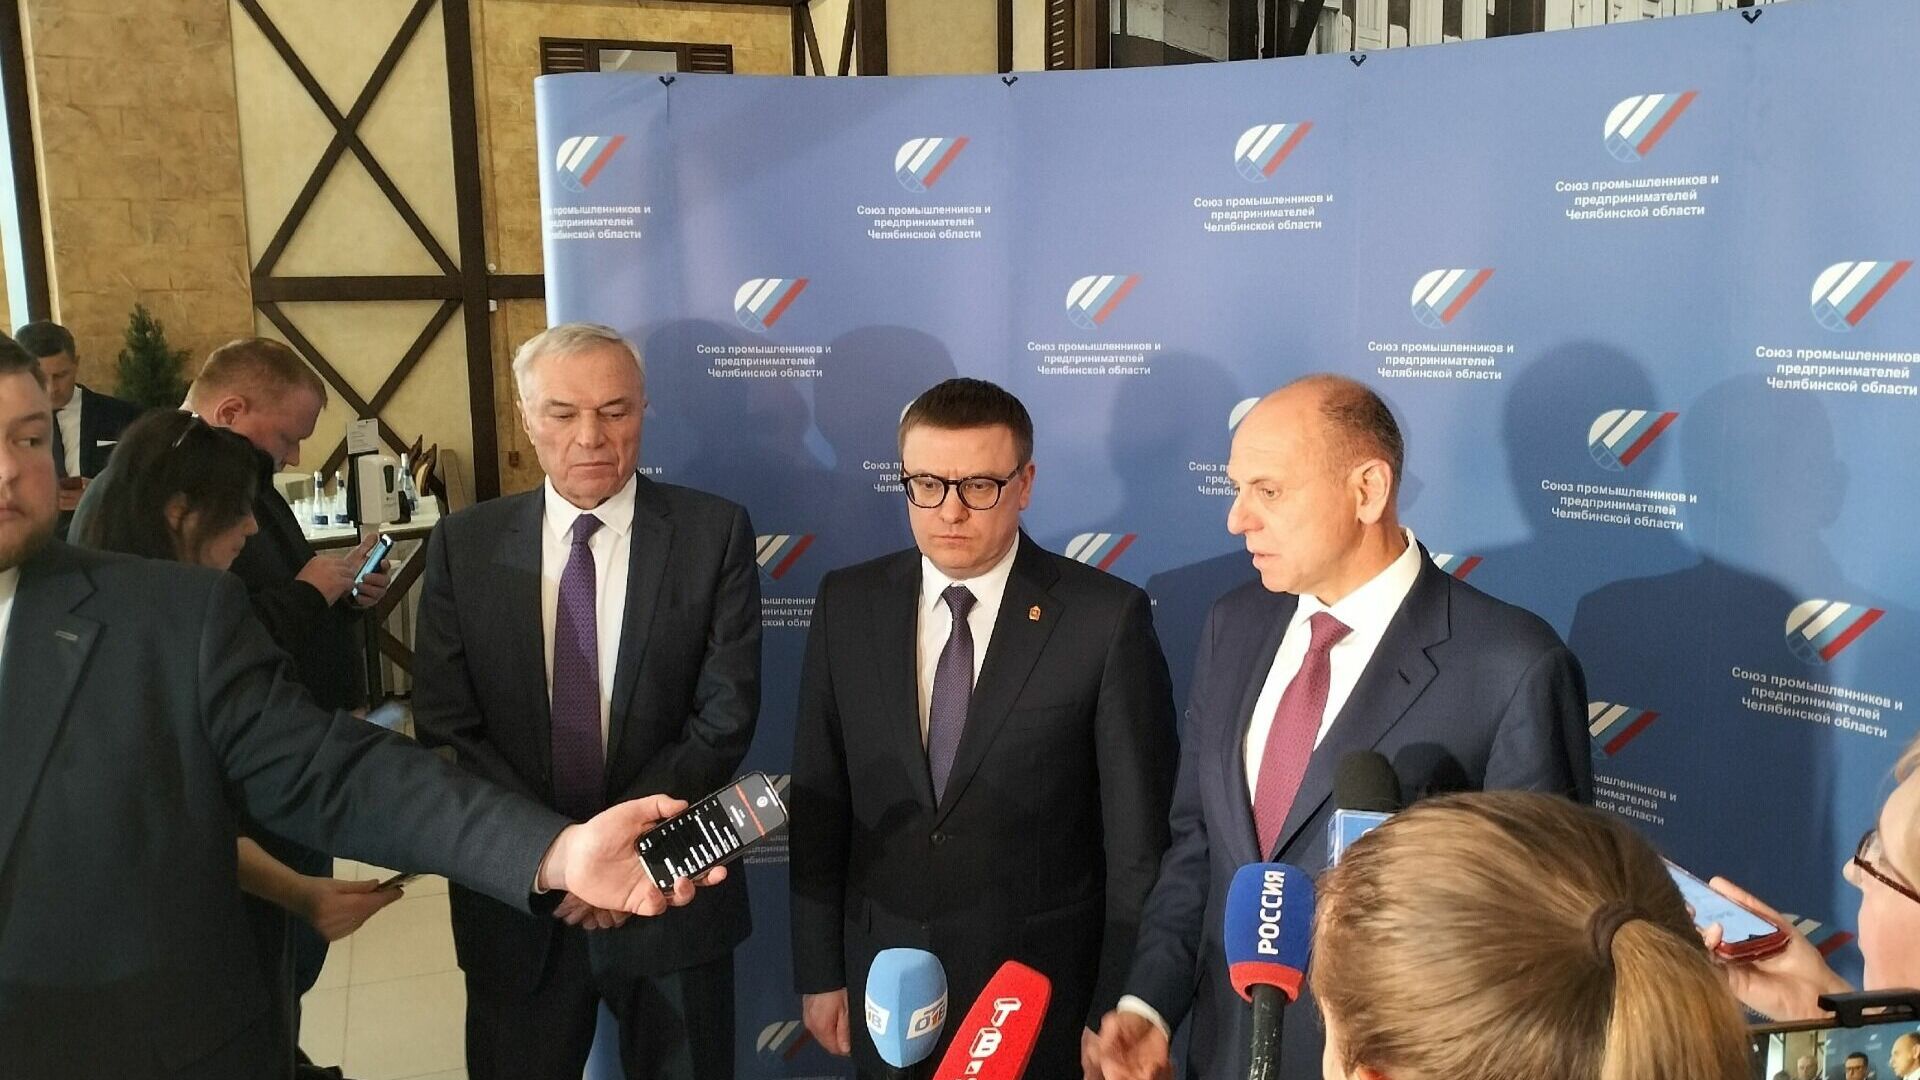 Виктор Рашников, Алексей Текслер и Дмитрий Пумпянский на пресс-конференции